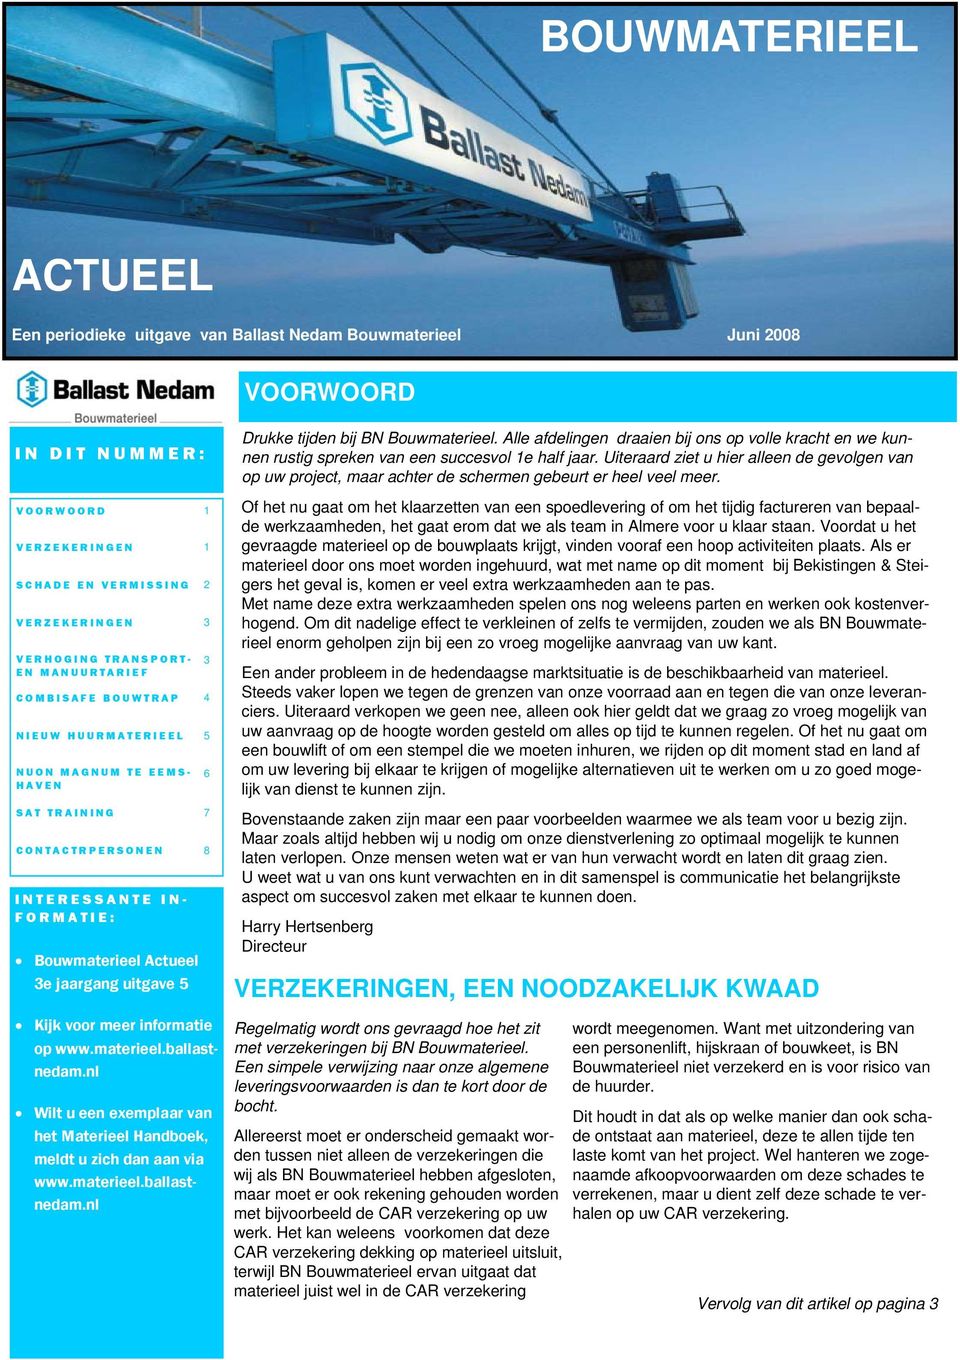 voor meer informatie op www.materieel.ballastnedam.nl Wilt u een exemplaar van het Materieel Handboek, meldt u zich dan aan via www.materieel.ballastnedam.nl 3 6 Drukke tijden bij BN Bouwmaterieel.